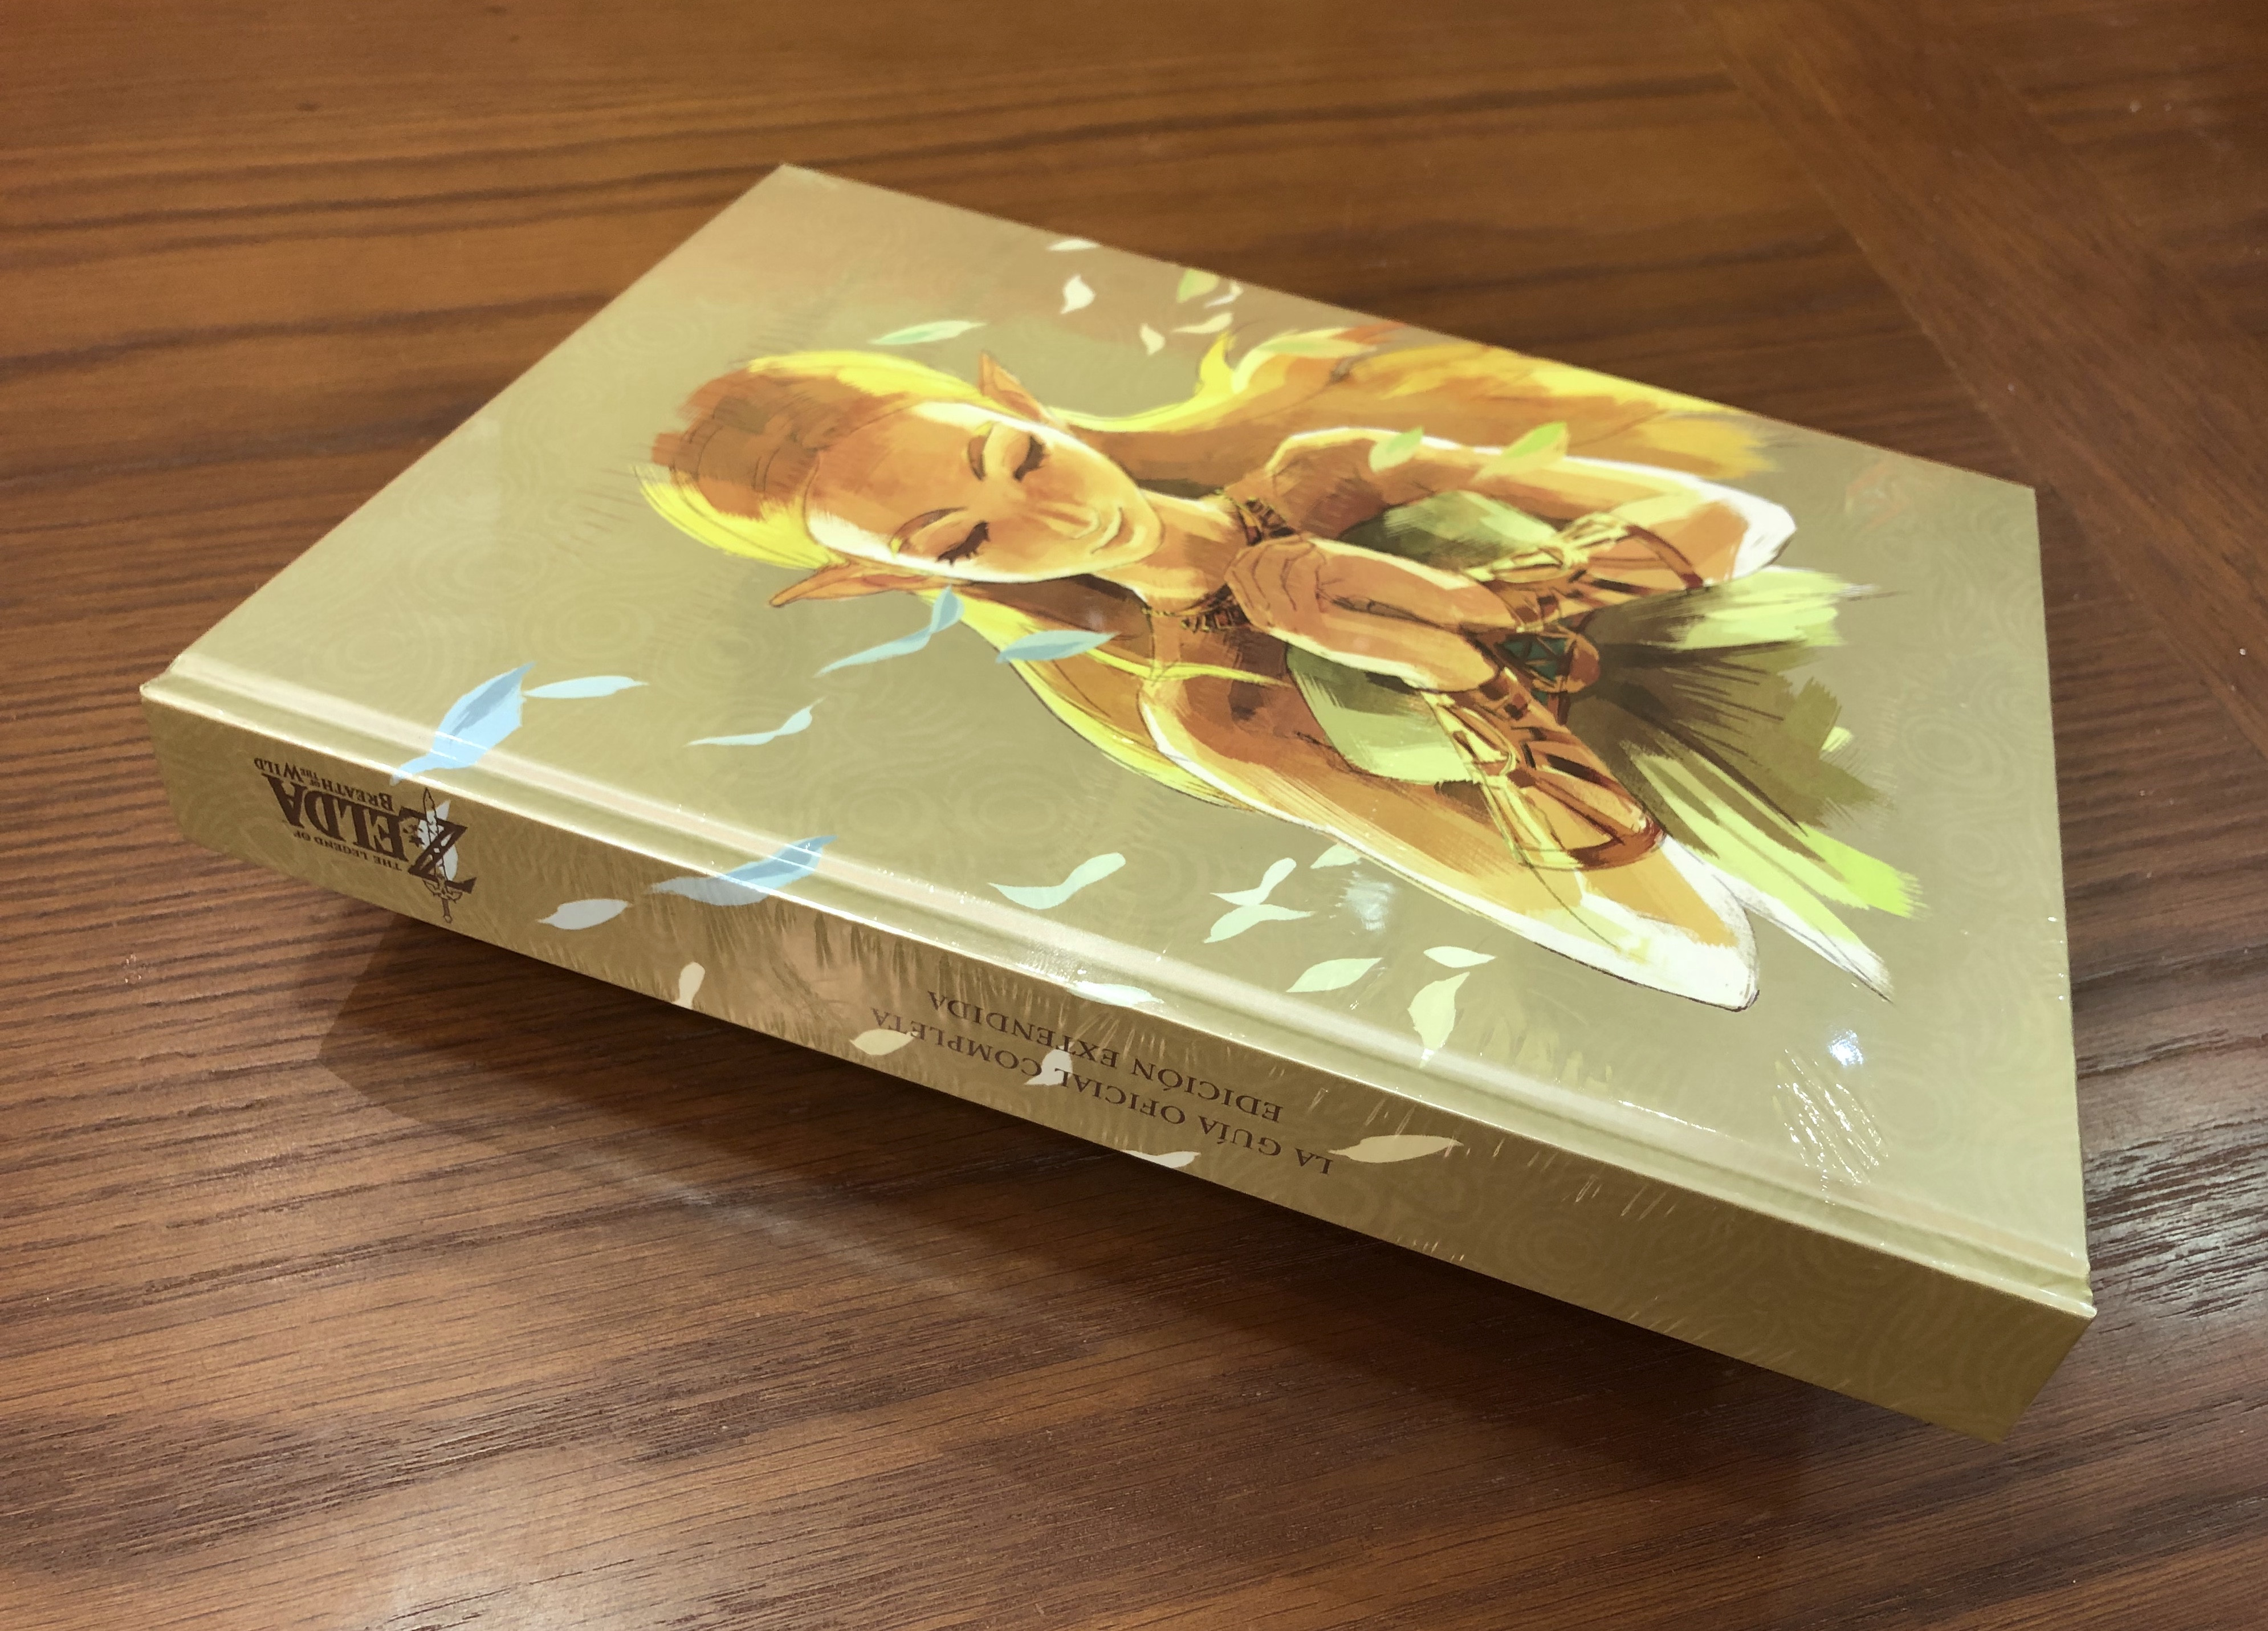 La guía oficial completa de Piggyback - Más - Guía Zelda: Breath of the Wild  (2023) ▷ Consejos y Trucos